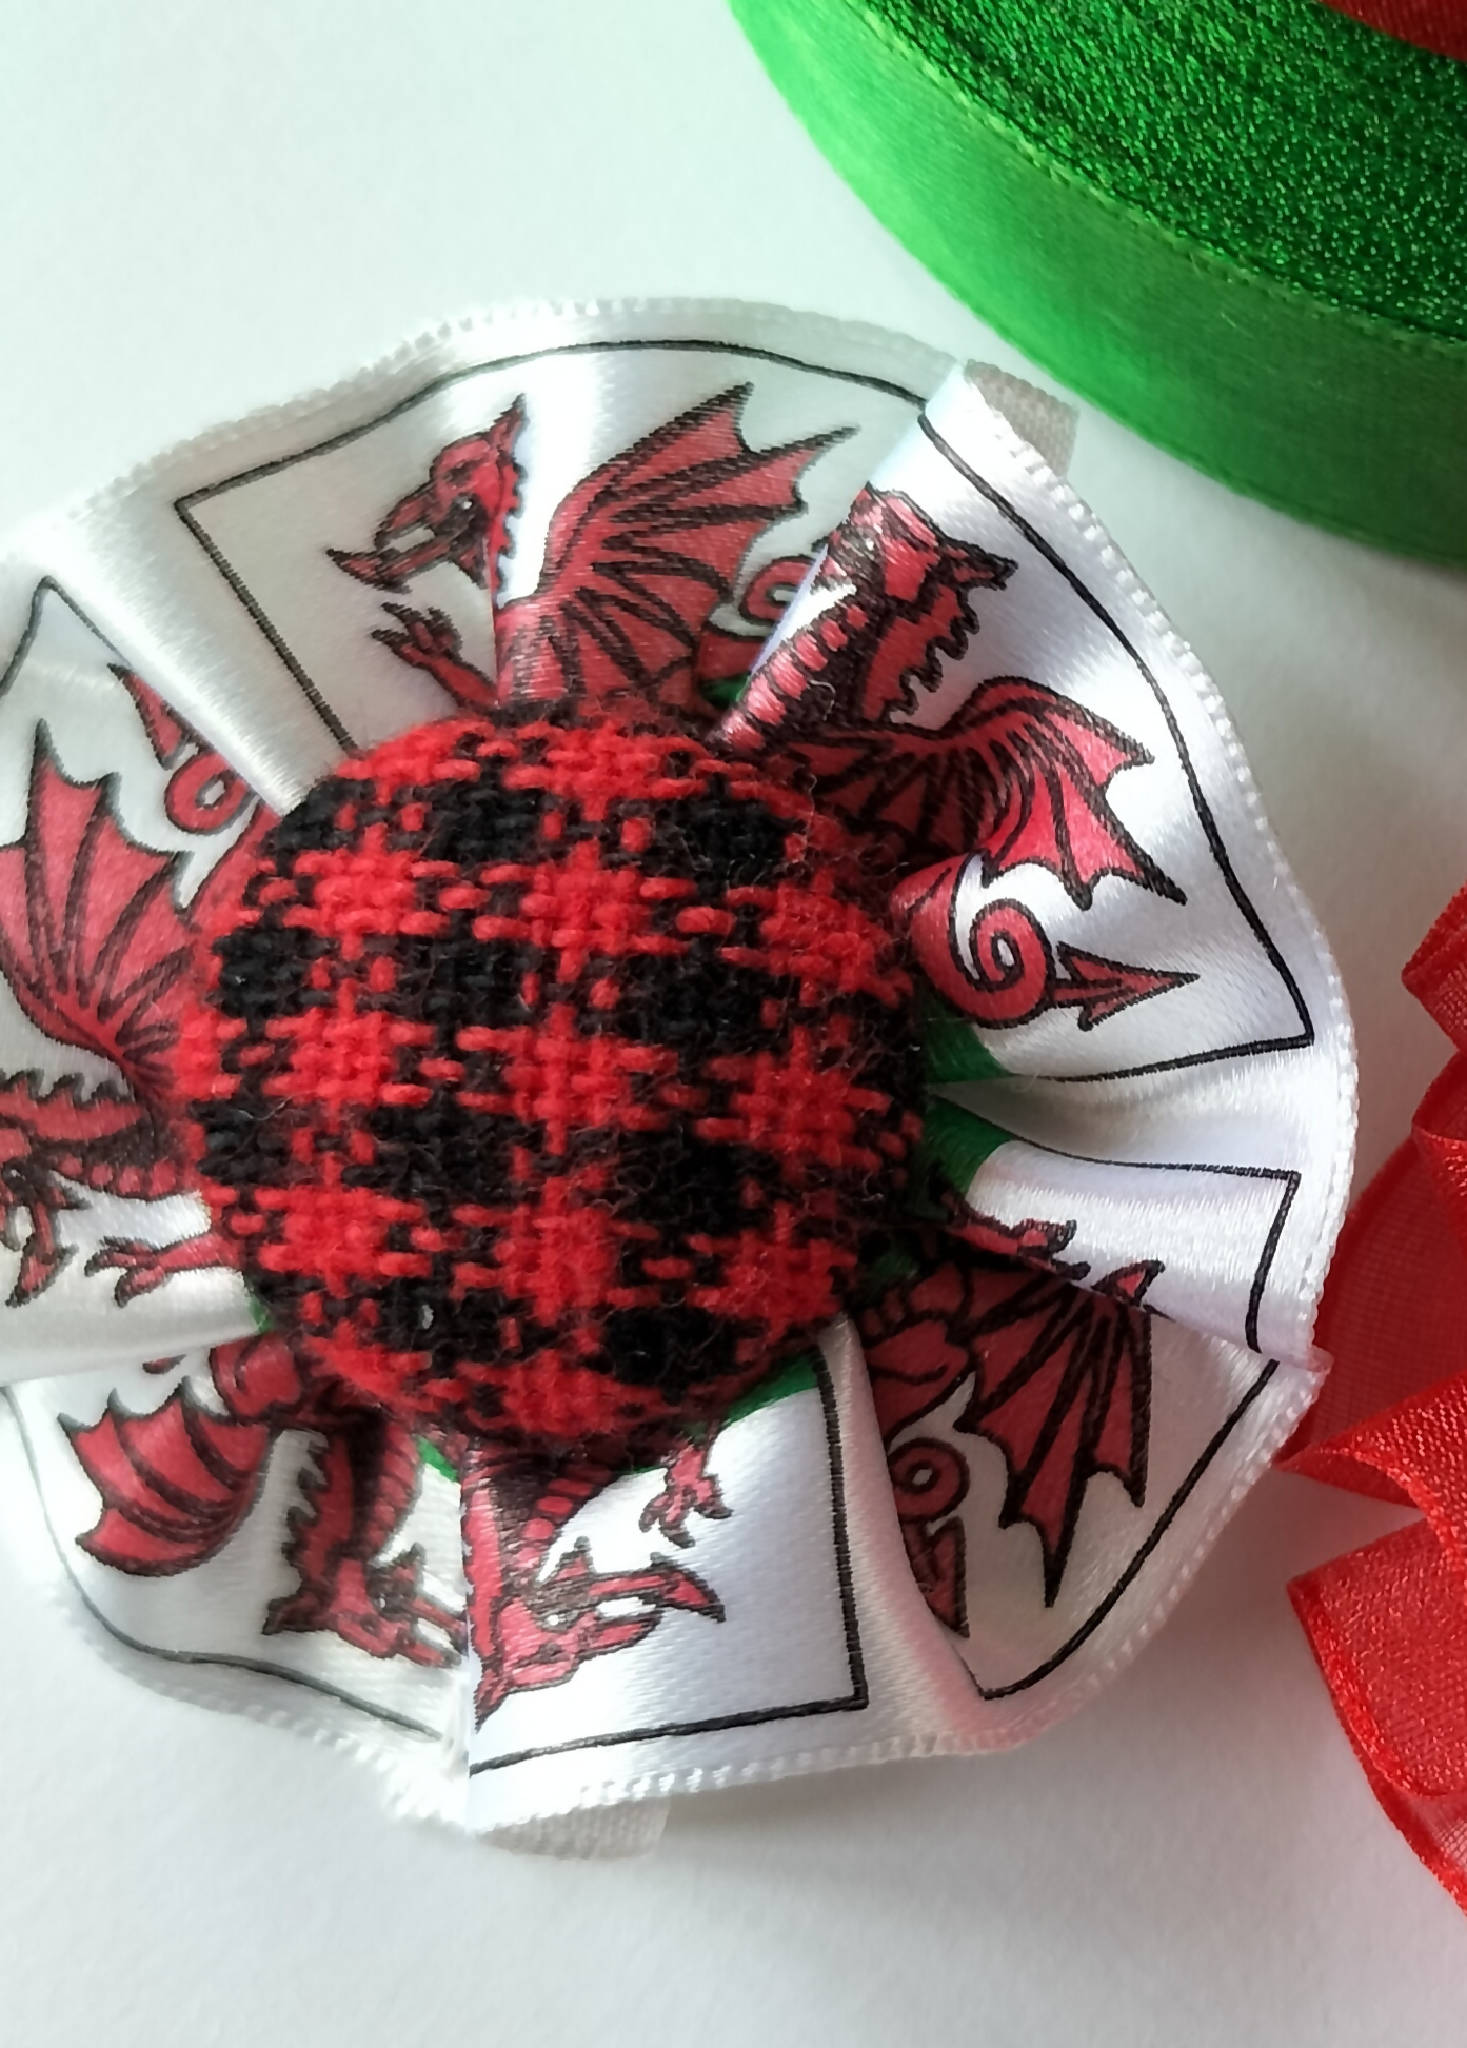 Welsh flag brooch